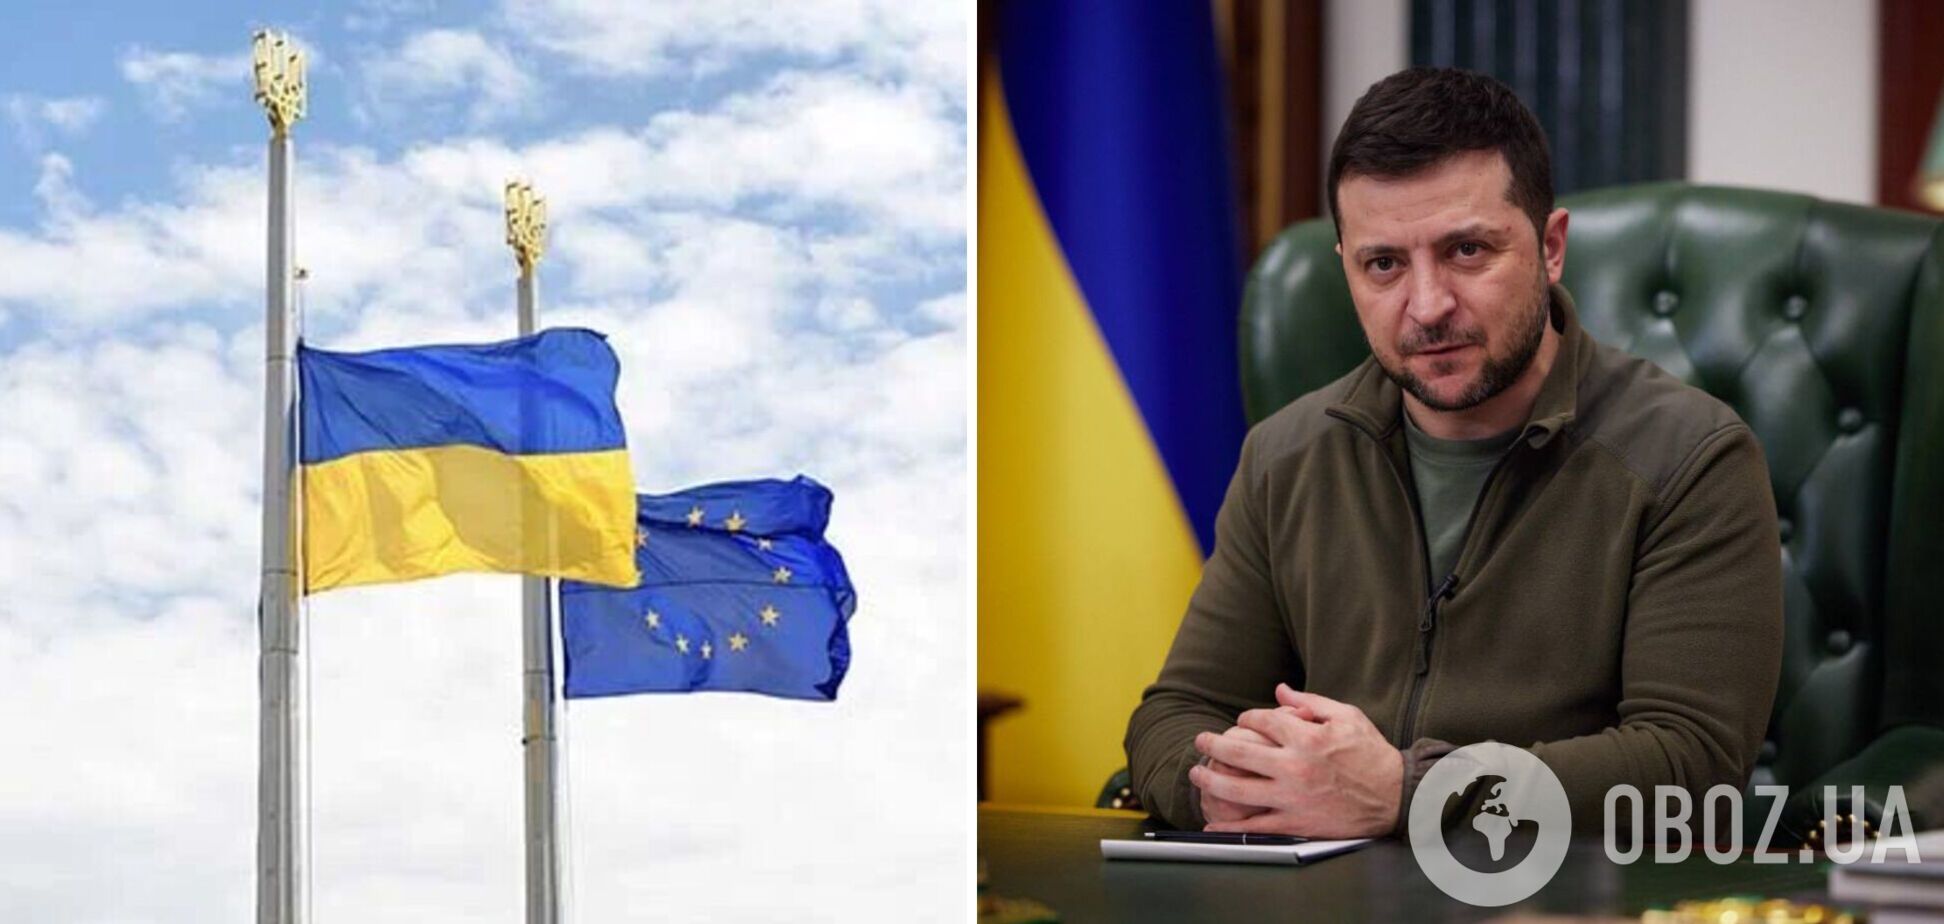 Очікуємо новини і позитивні рішення: Зеленський  анонсував нові реформи напередодні саміту Україна - ЄС 